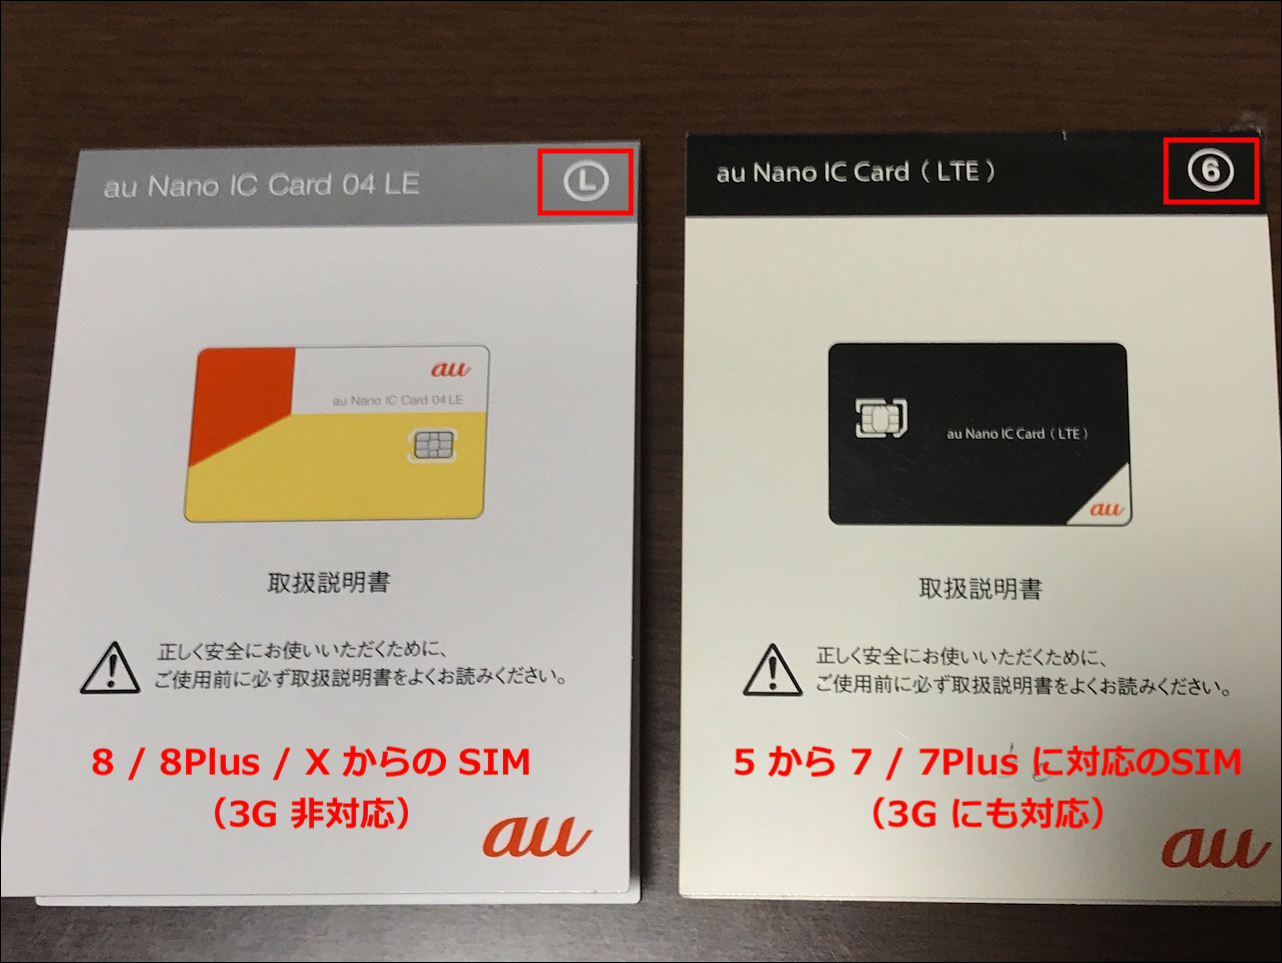 [10000印刷√] au nano ic card 04 le 違い 136120-Au nano ic card 04 le 違い